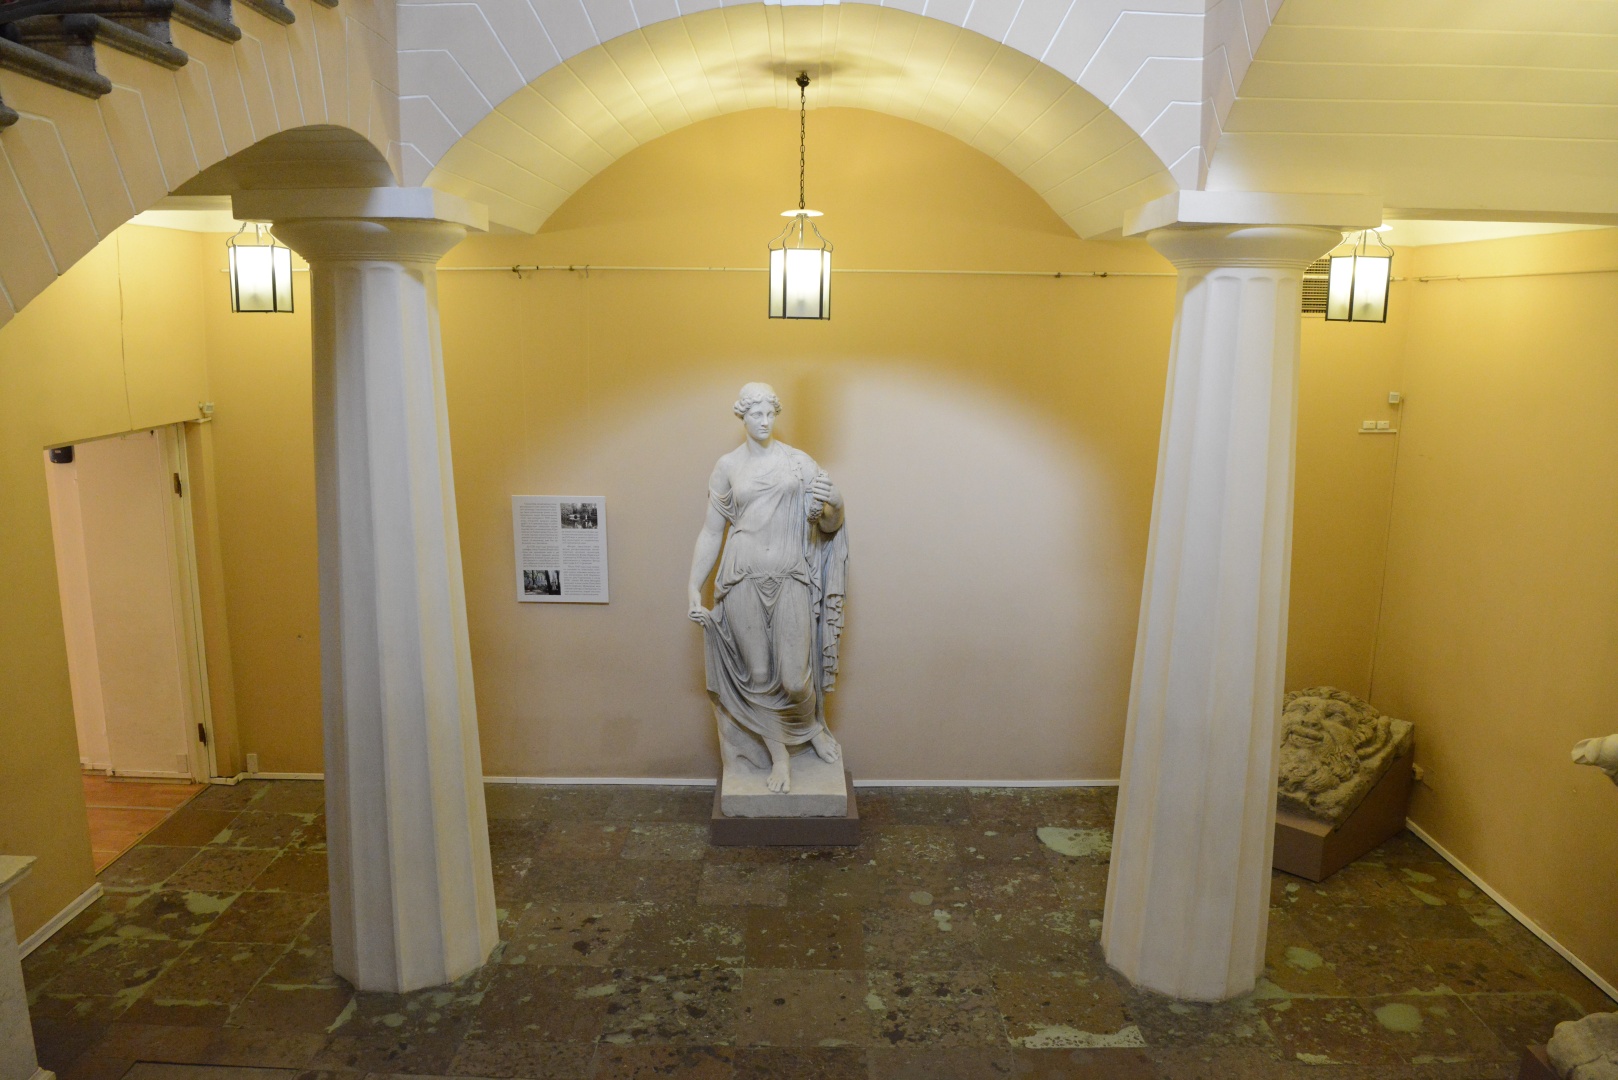 Статуи Нептуна и Флоры, маскарон и две мраморные вазы вернулись в Строгановский дворец после реставрации